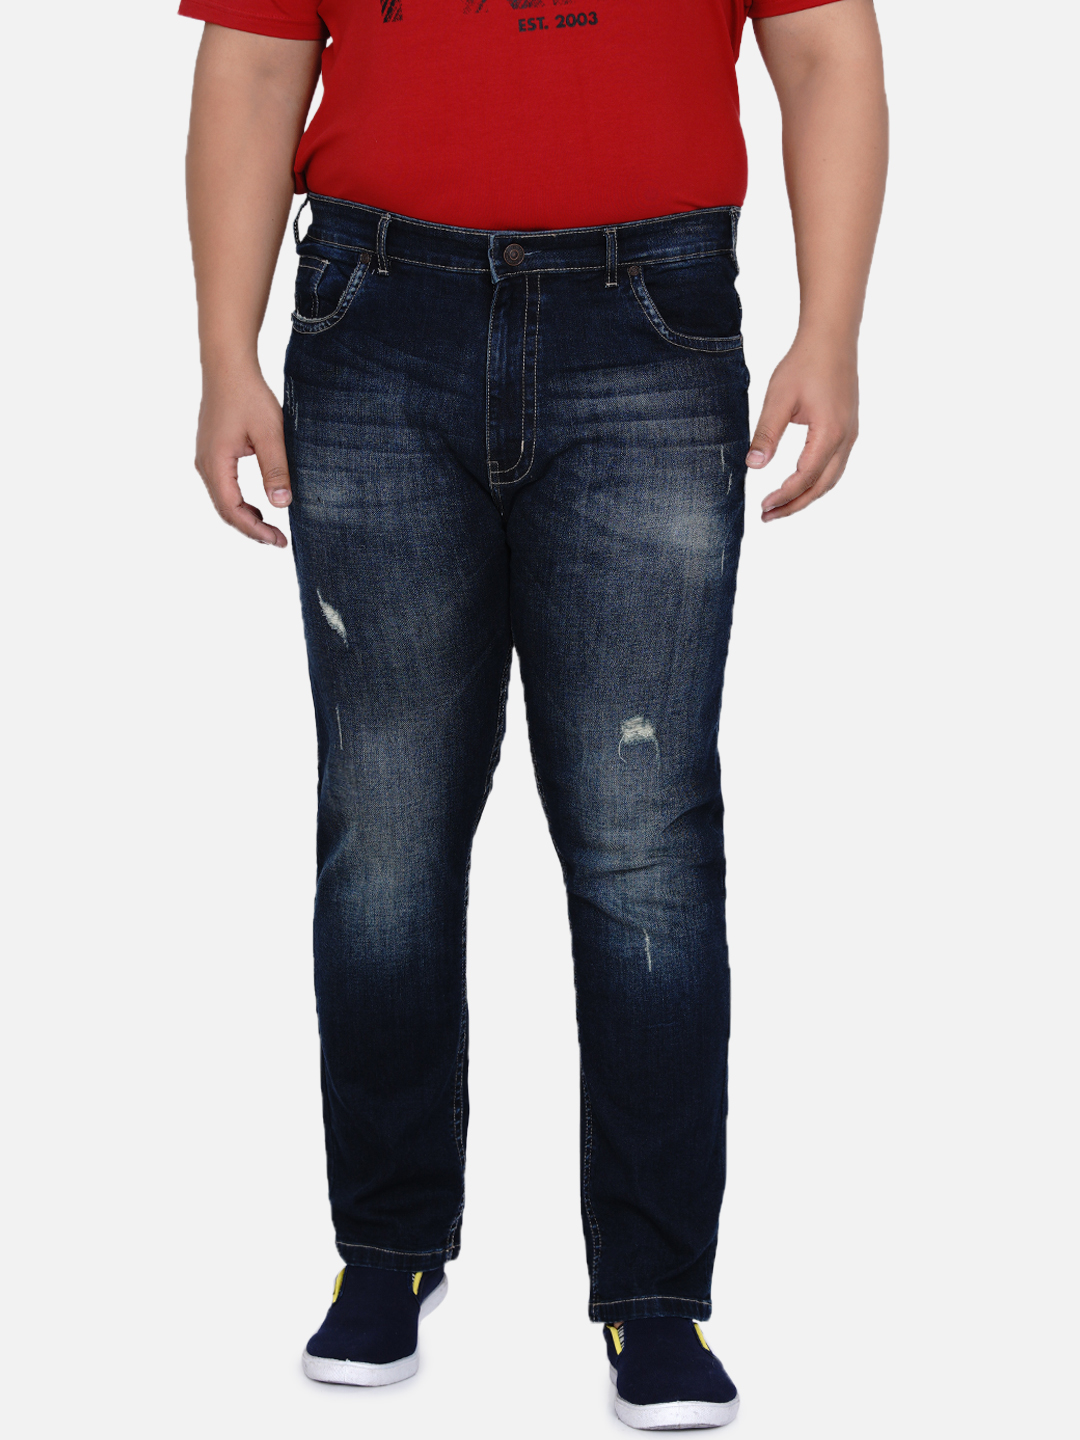 affordables/jeans/JPJ12184/jpj12184-3.jpg